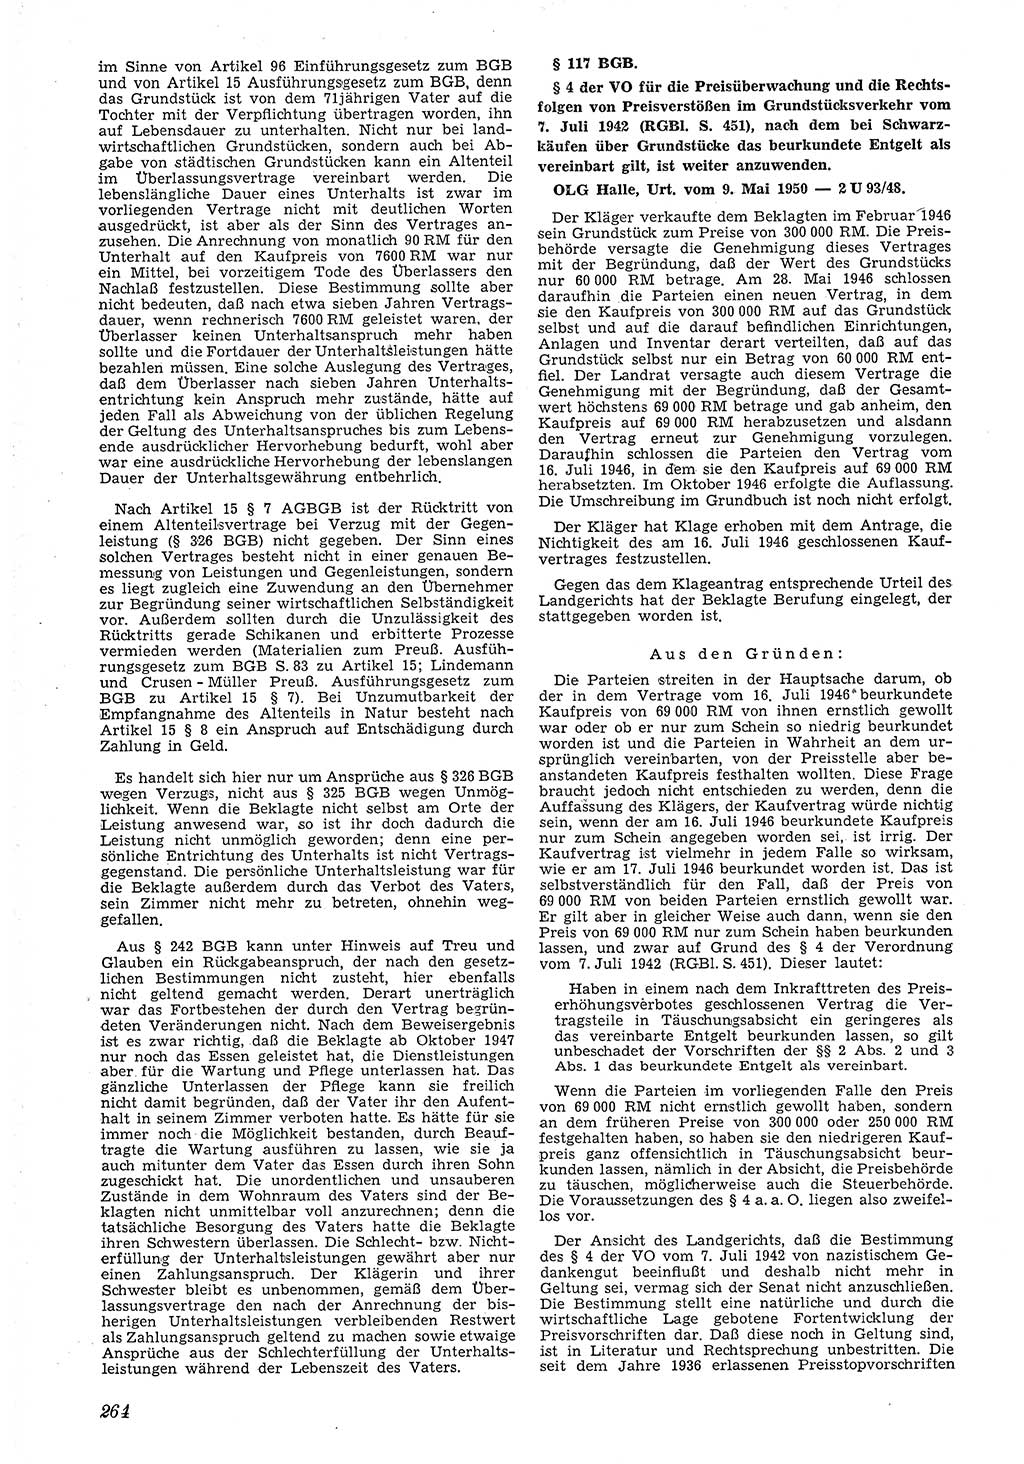 Neue Justiz (NJ), Zeitschrift für Recht und Rechtswissenschaft [Deutsche Demokratische Republik (DDR)], 4. Jahrgang 1950, Seite 264 (NJ DDR 1950, S. 264)